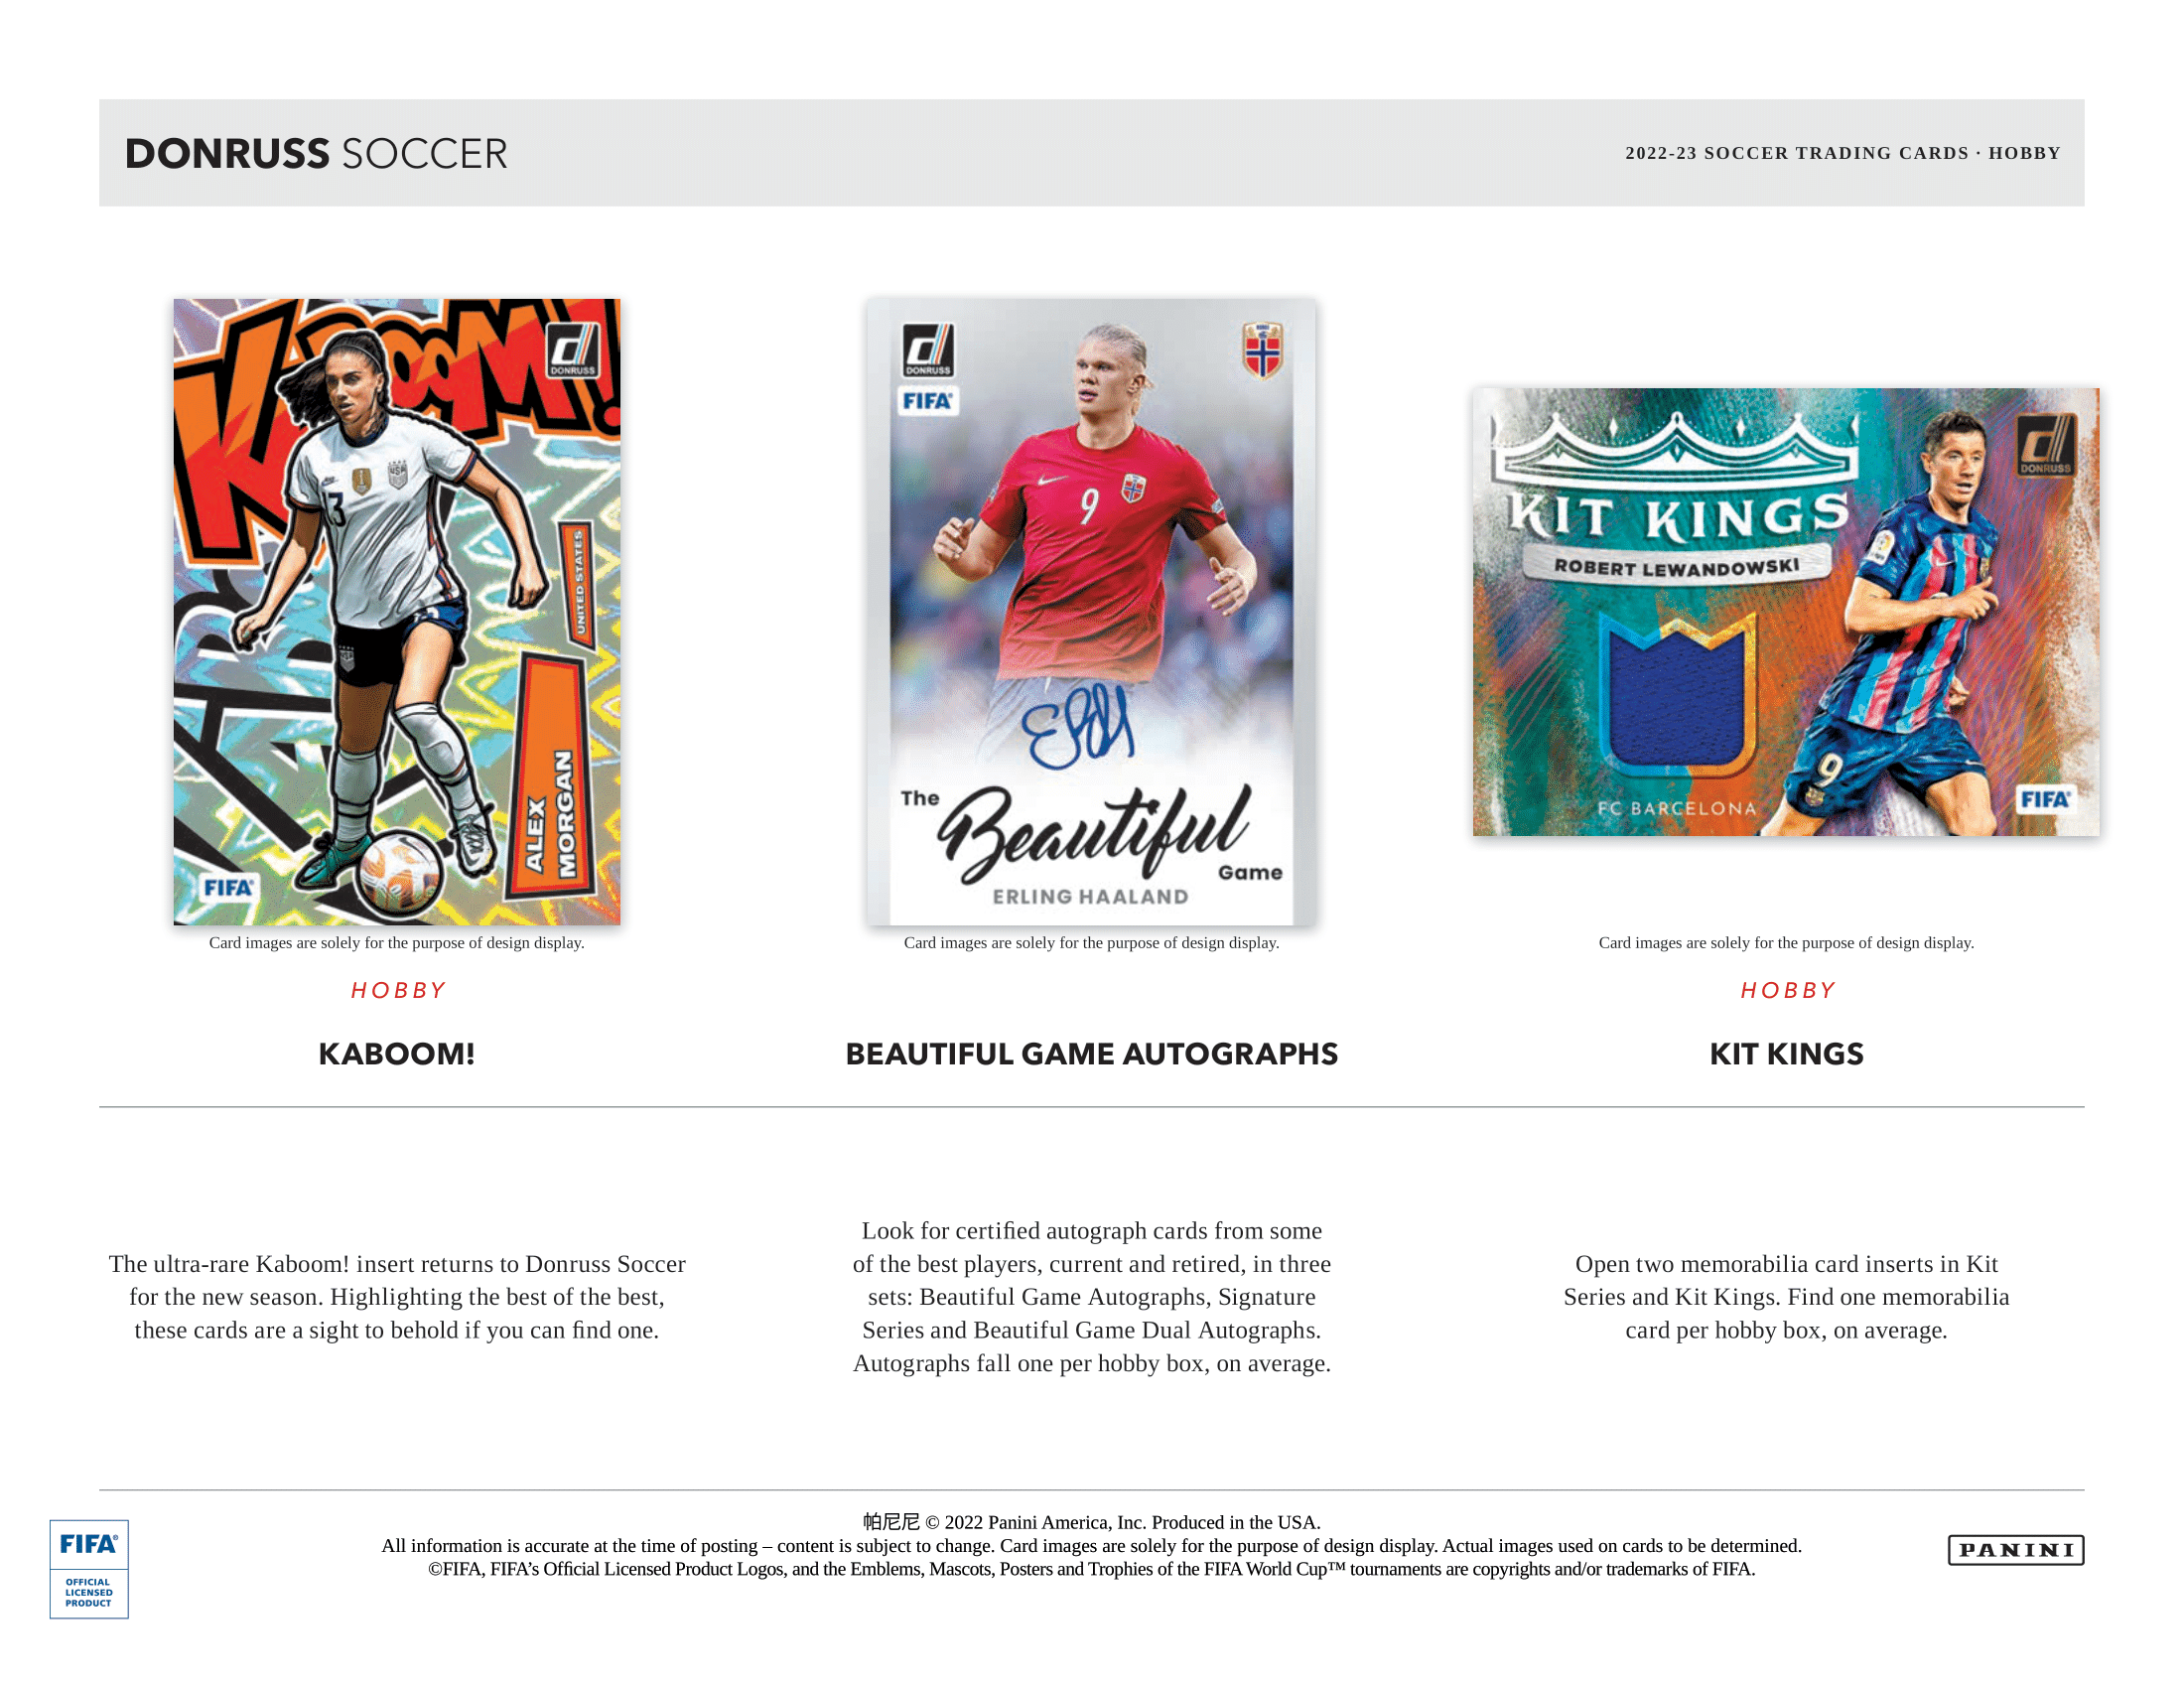 Panini - 2022/23 Donruss Football (Soccer) - Hobby Box - The Card Vault